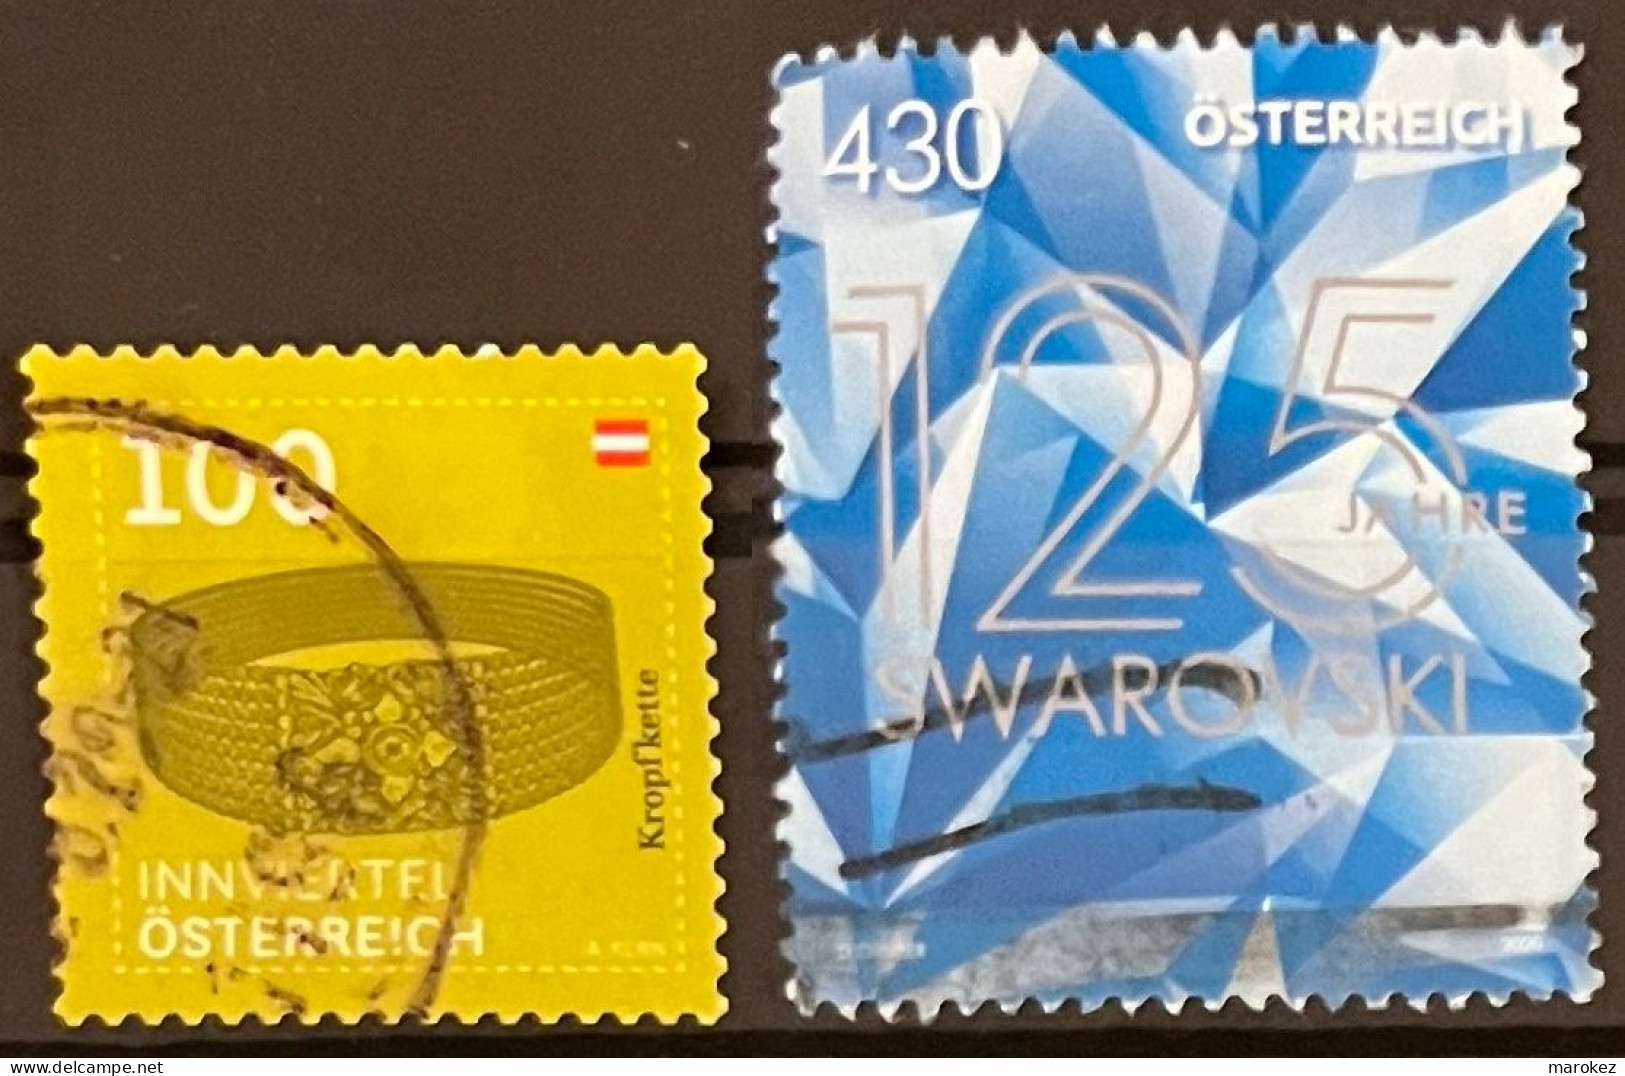 AUSTRIA 2020 Art - Goiter Chain & Swarowski Glass Cutting 2 Postally Used Stamps MICHEL # 3519,3545 - Gebraucht